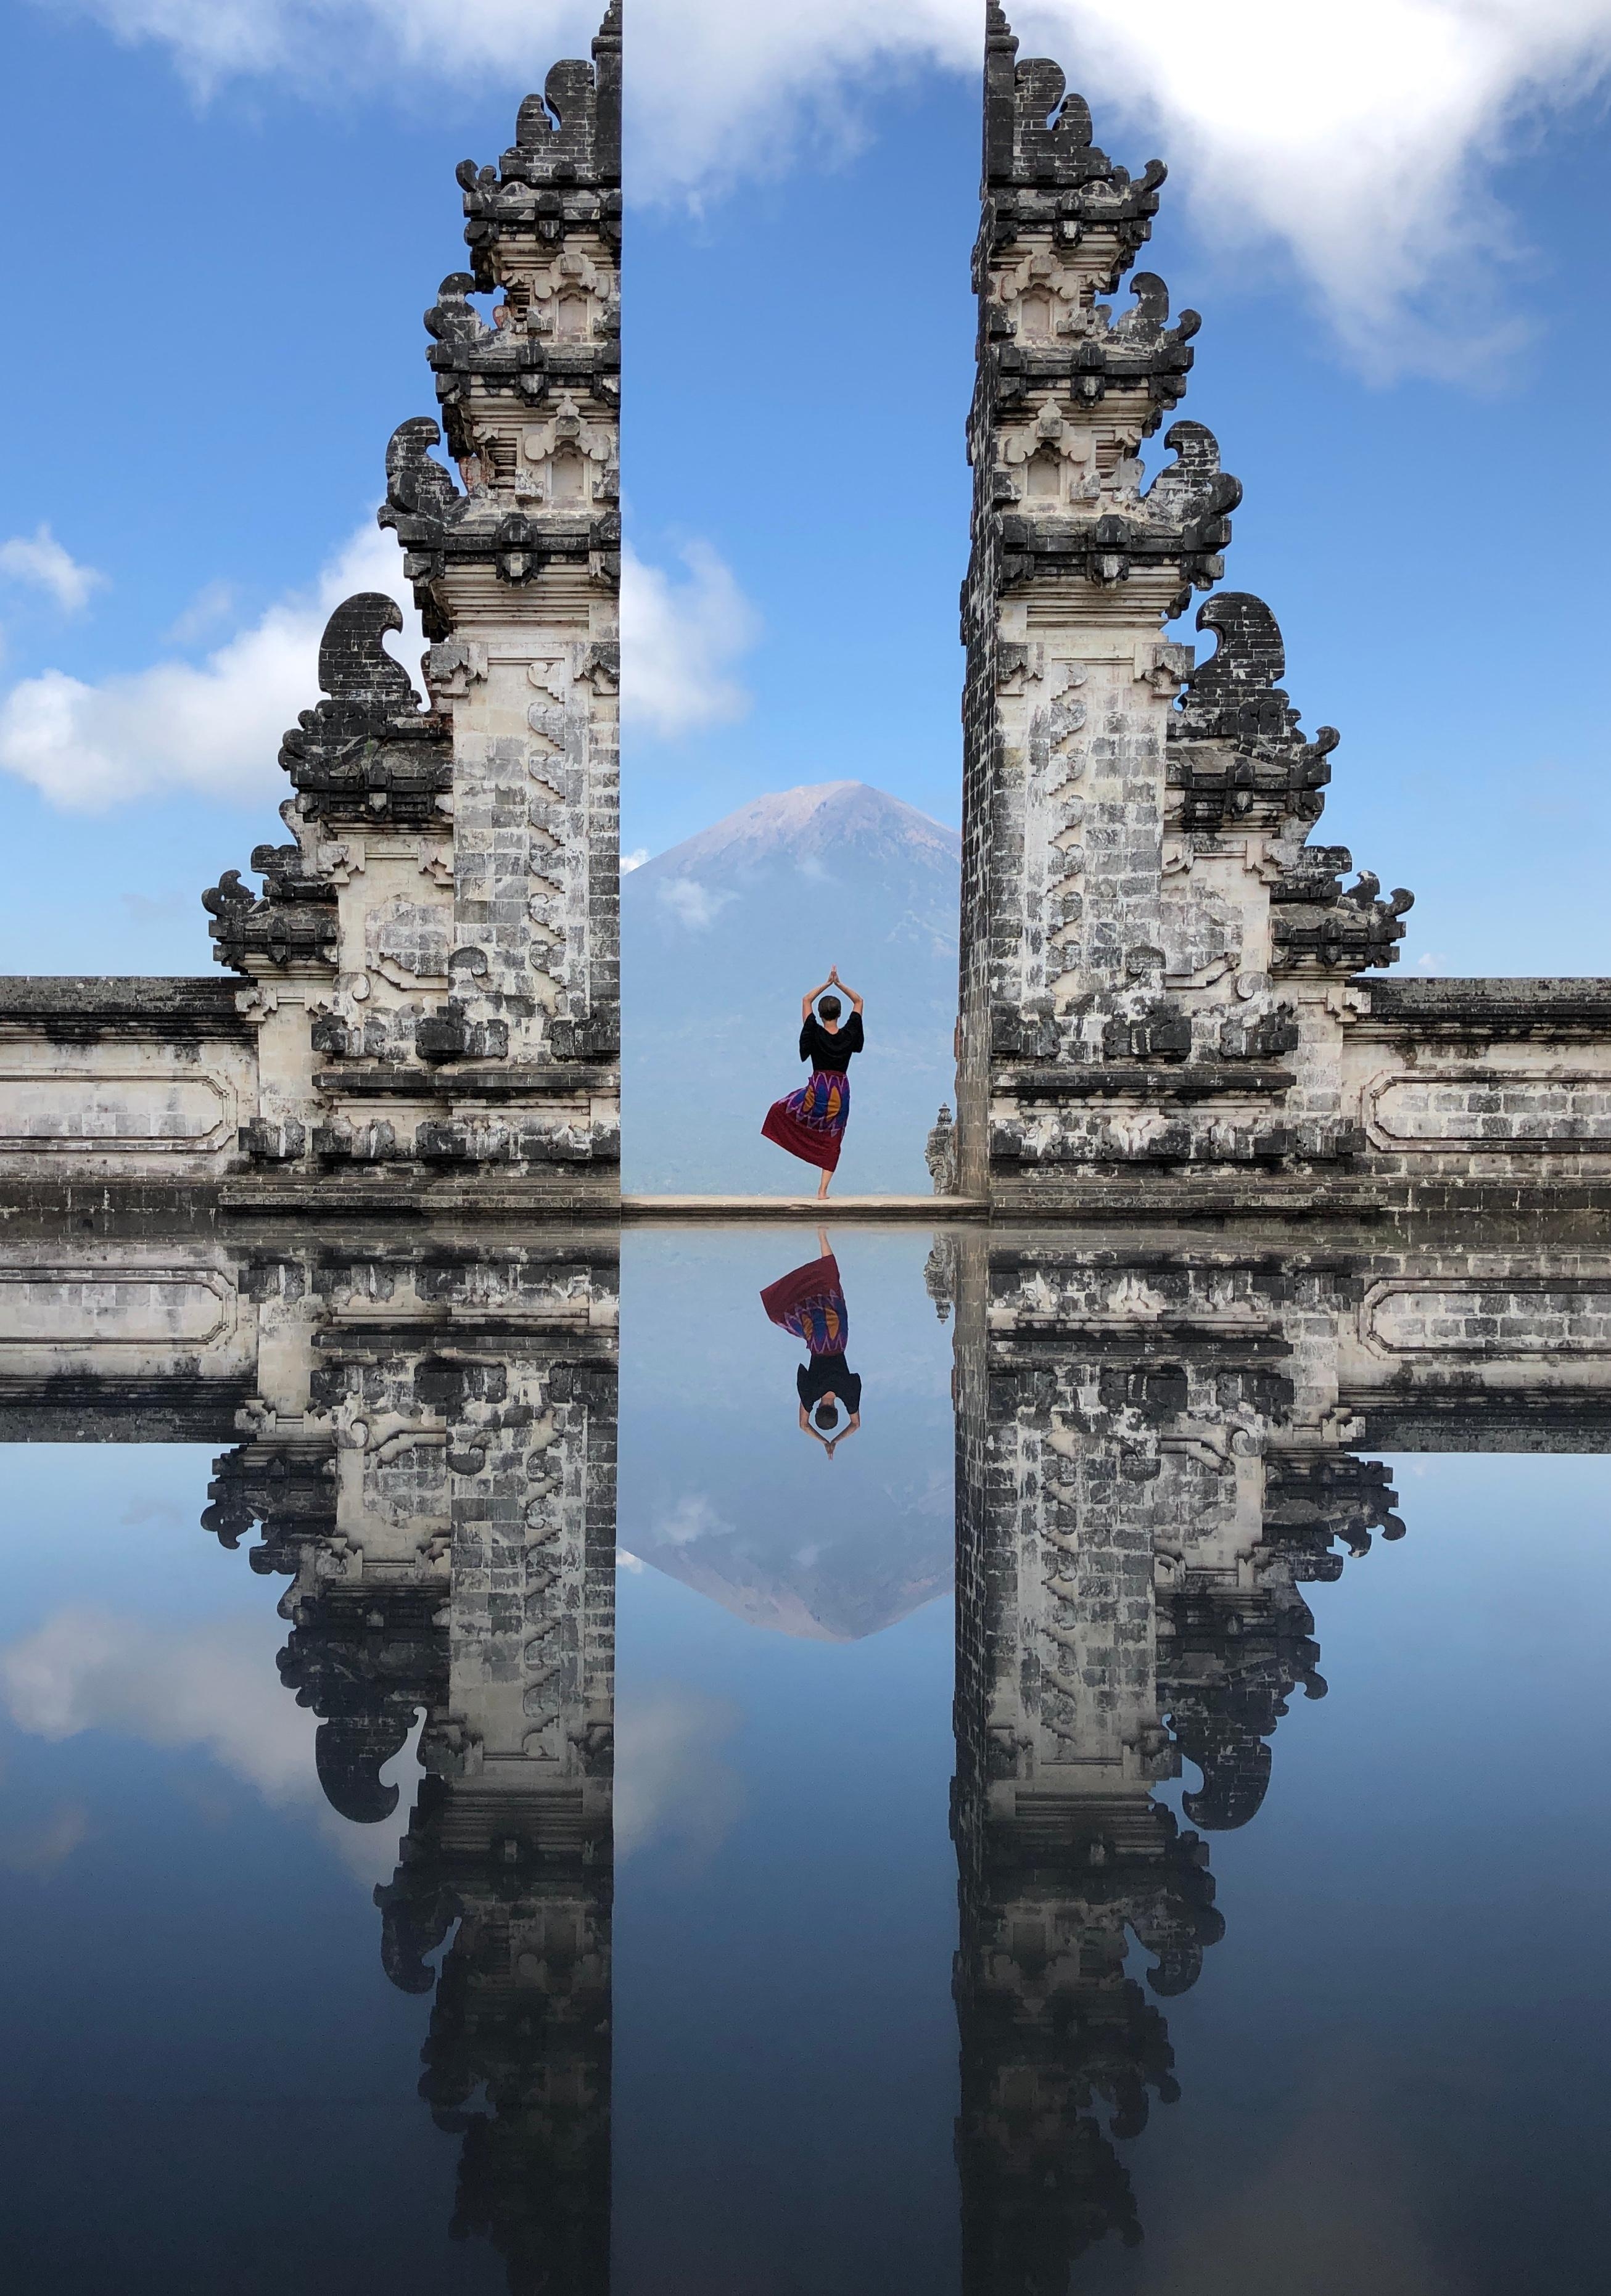 Yoga ist #wellness für Körper und Geist. 
#travelchallenge #bali #indonesia #heavensgate